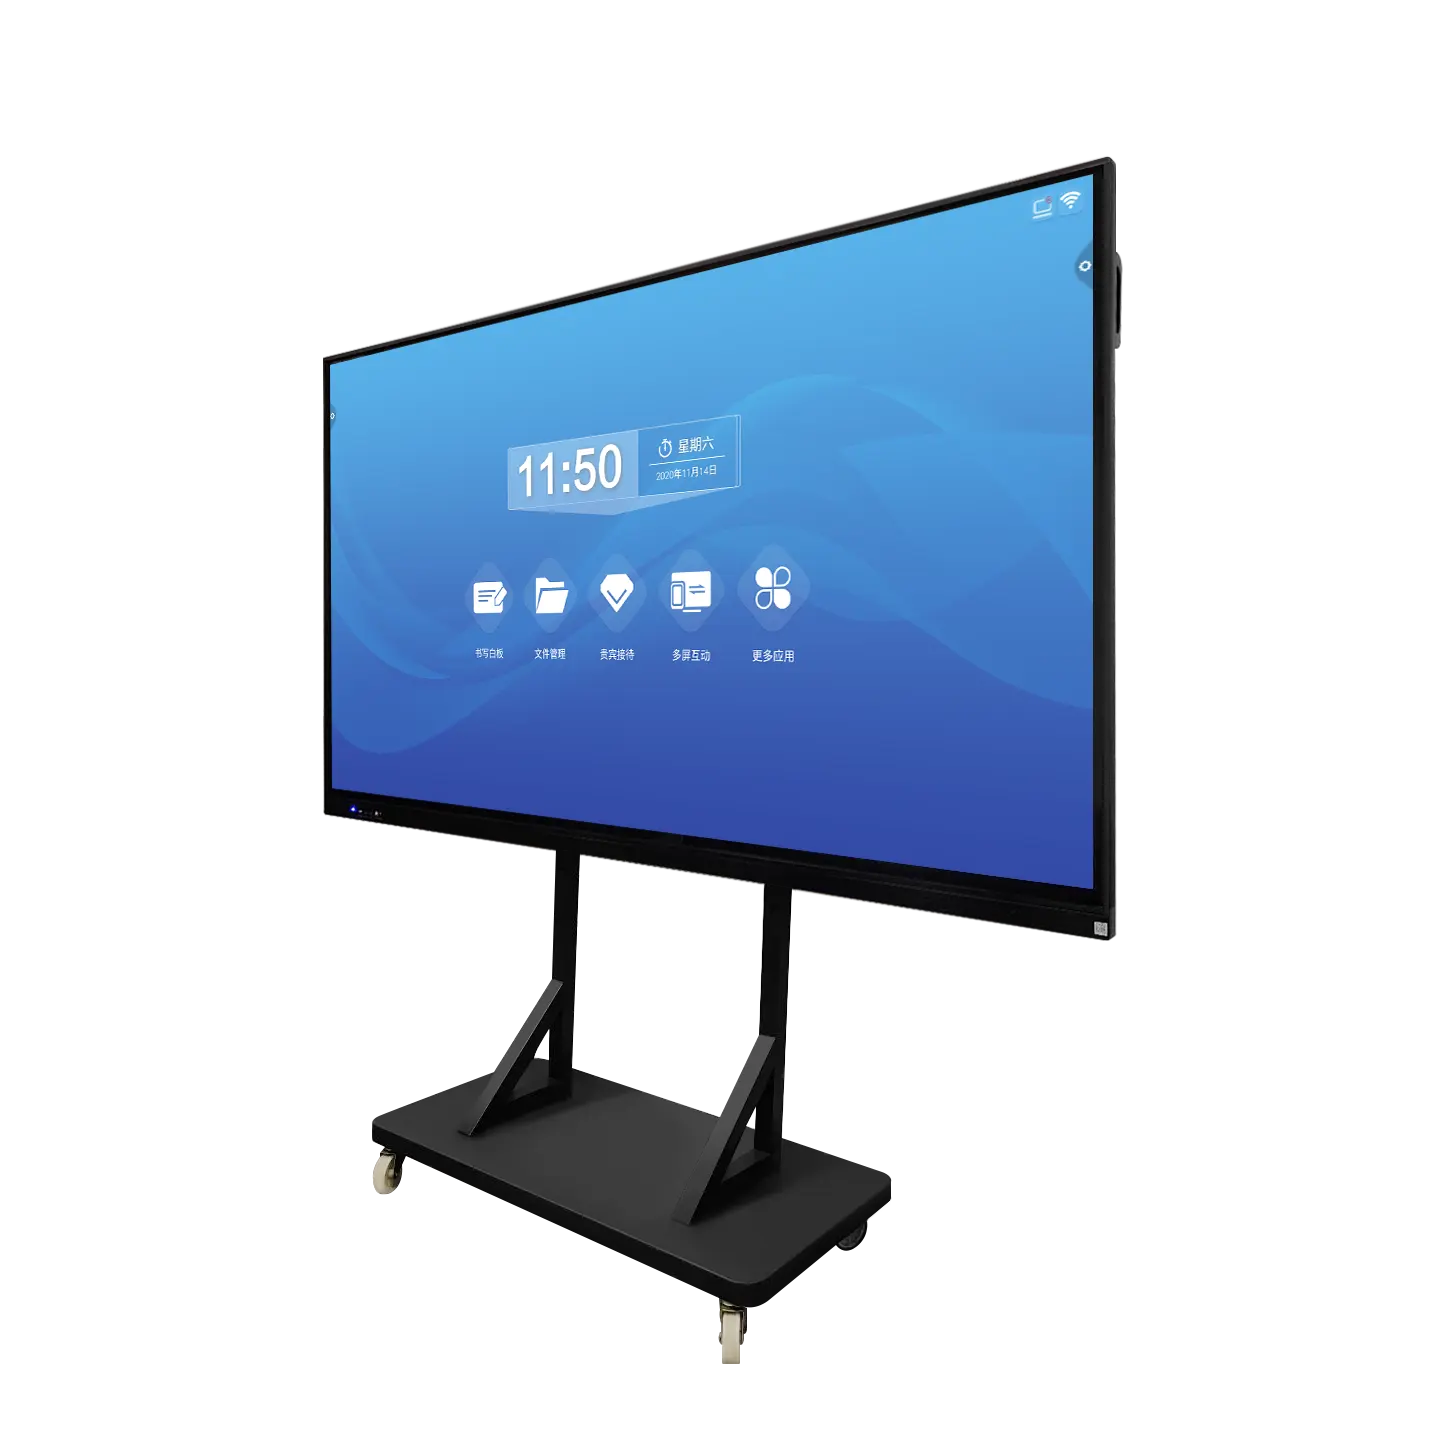 شاشات LCD باللمس بالأشعة تحت الحمراء مضادة للوهج 75 بوصة لوحة رقمية من فئة ذكية لوحة بيضاء تفاعلية بسعر منخفض